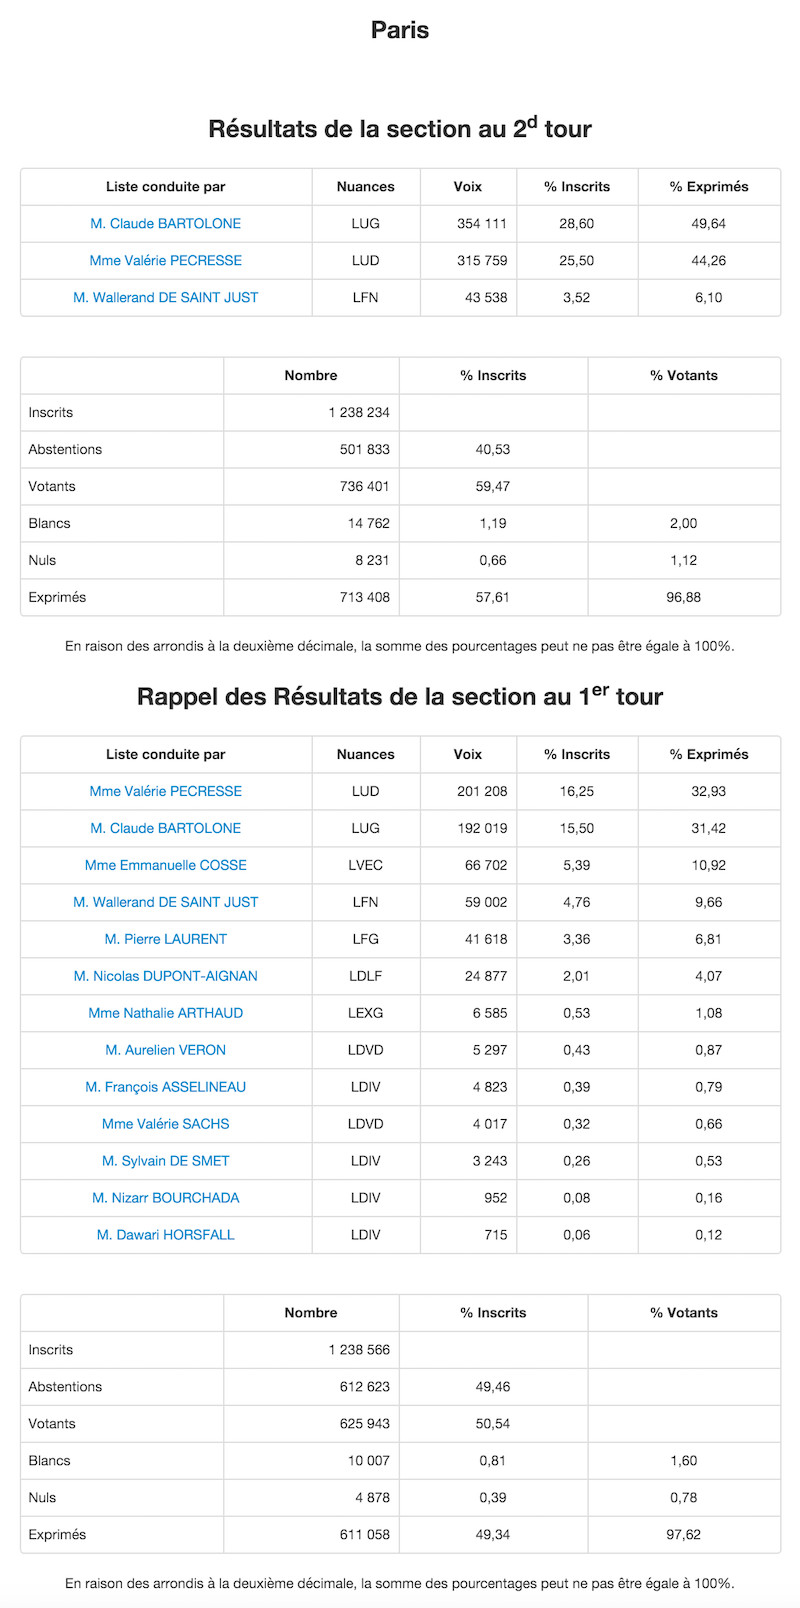 Régionales 2015 et 2010 dans le 11e arrondissement de Paris